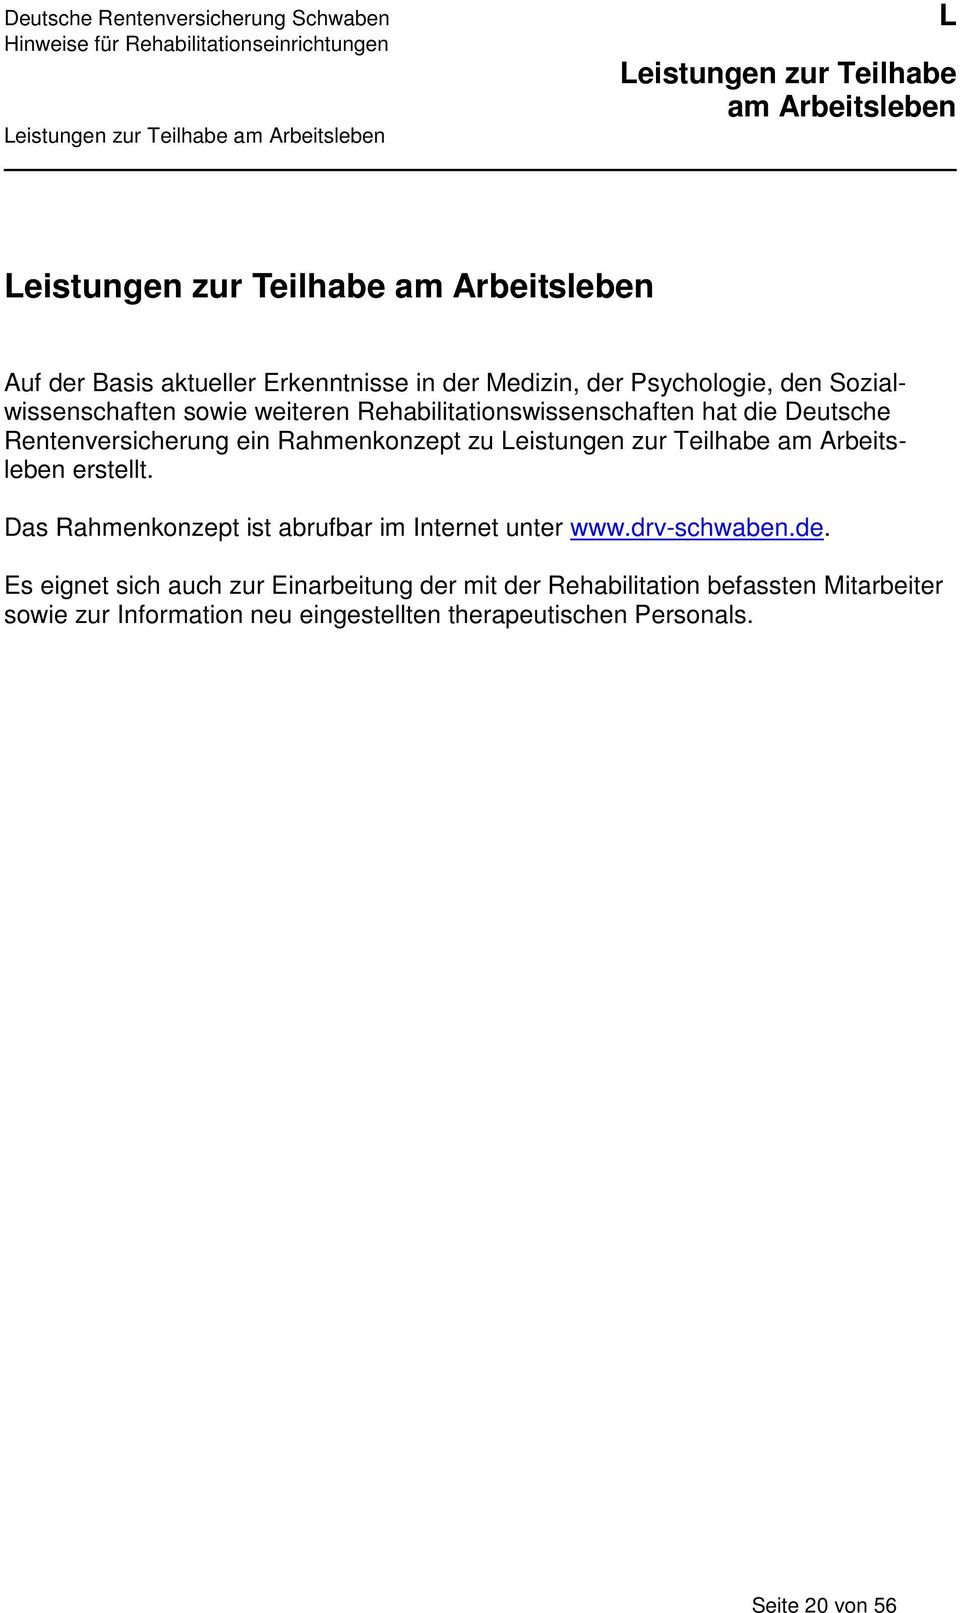 zu erstellt. Das Rahmenkonzept ist abrufbar im Internet unter www.drv-schwaben.de.